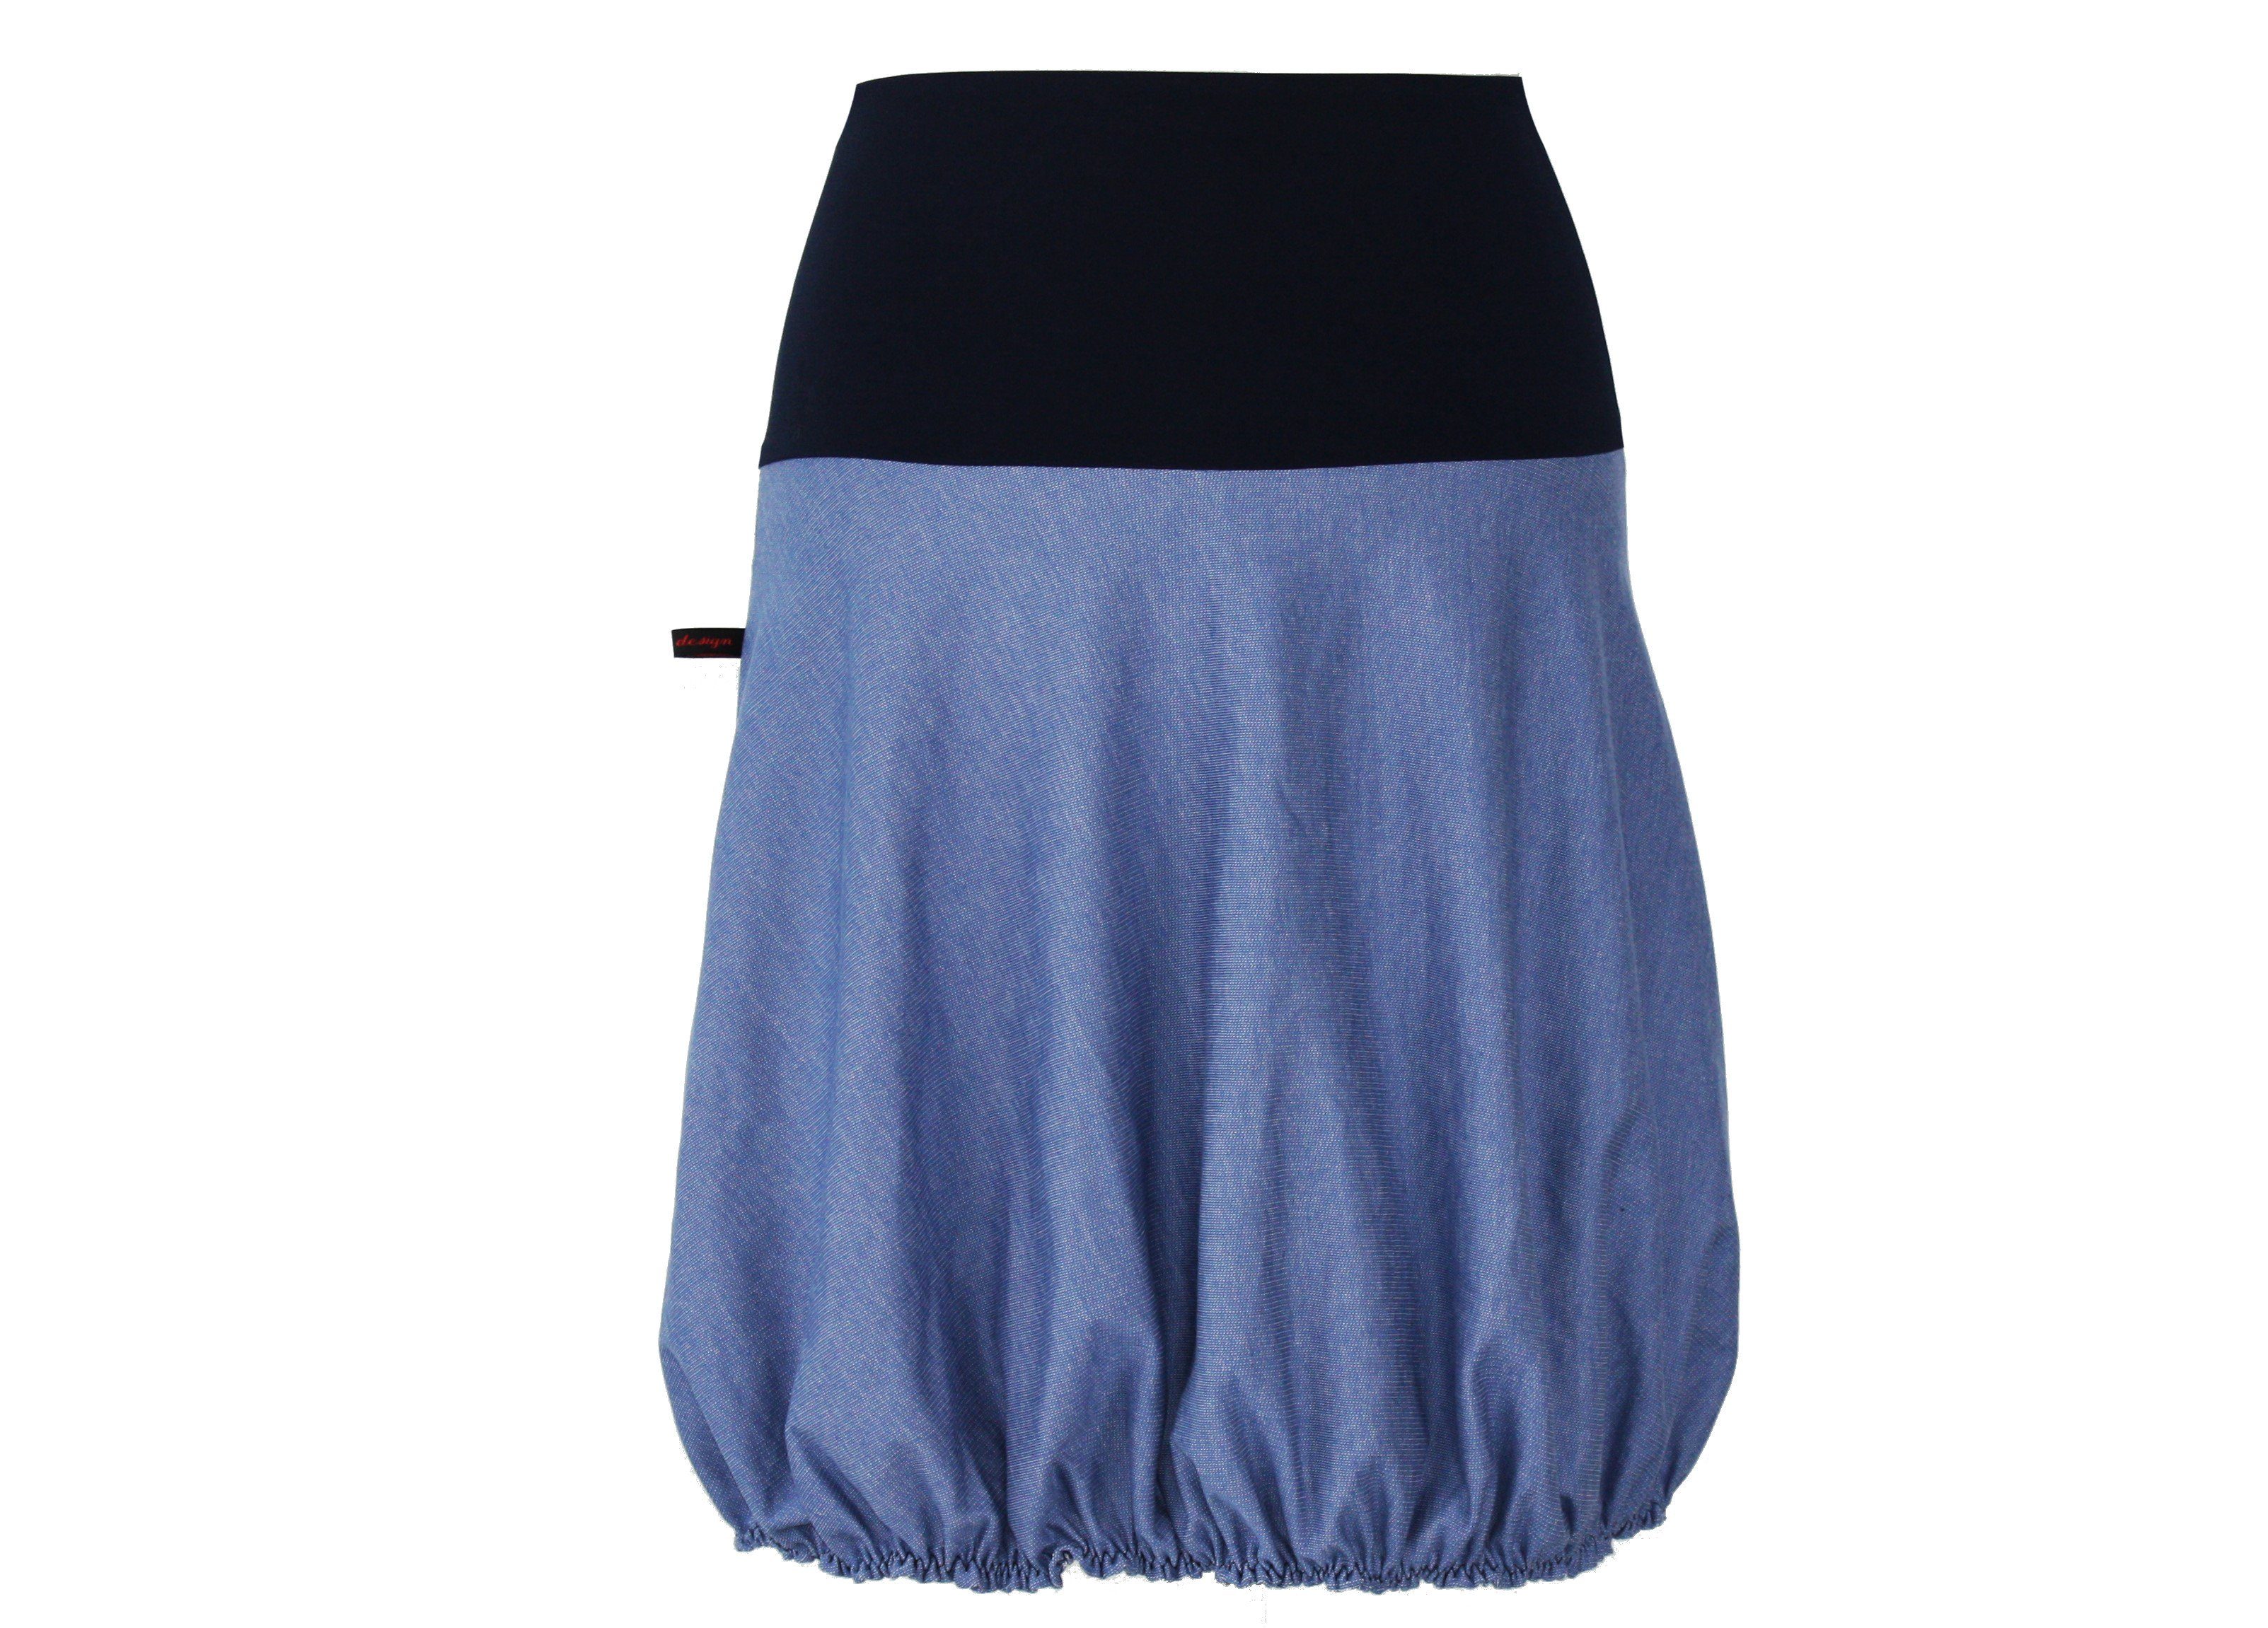 Großer Verkauf neuer Produkte durchgeführt dunkle design A-Linien-Rock Tulpenrock 54cm Sweat Blau Farbwahl Jeansblau